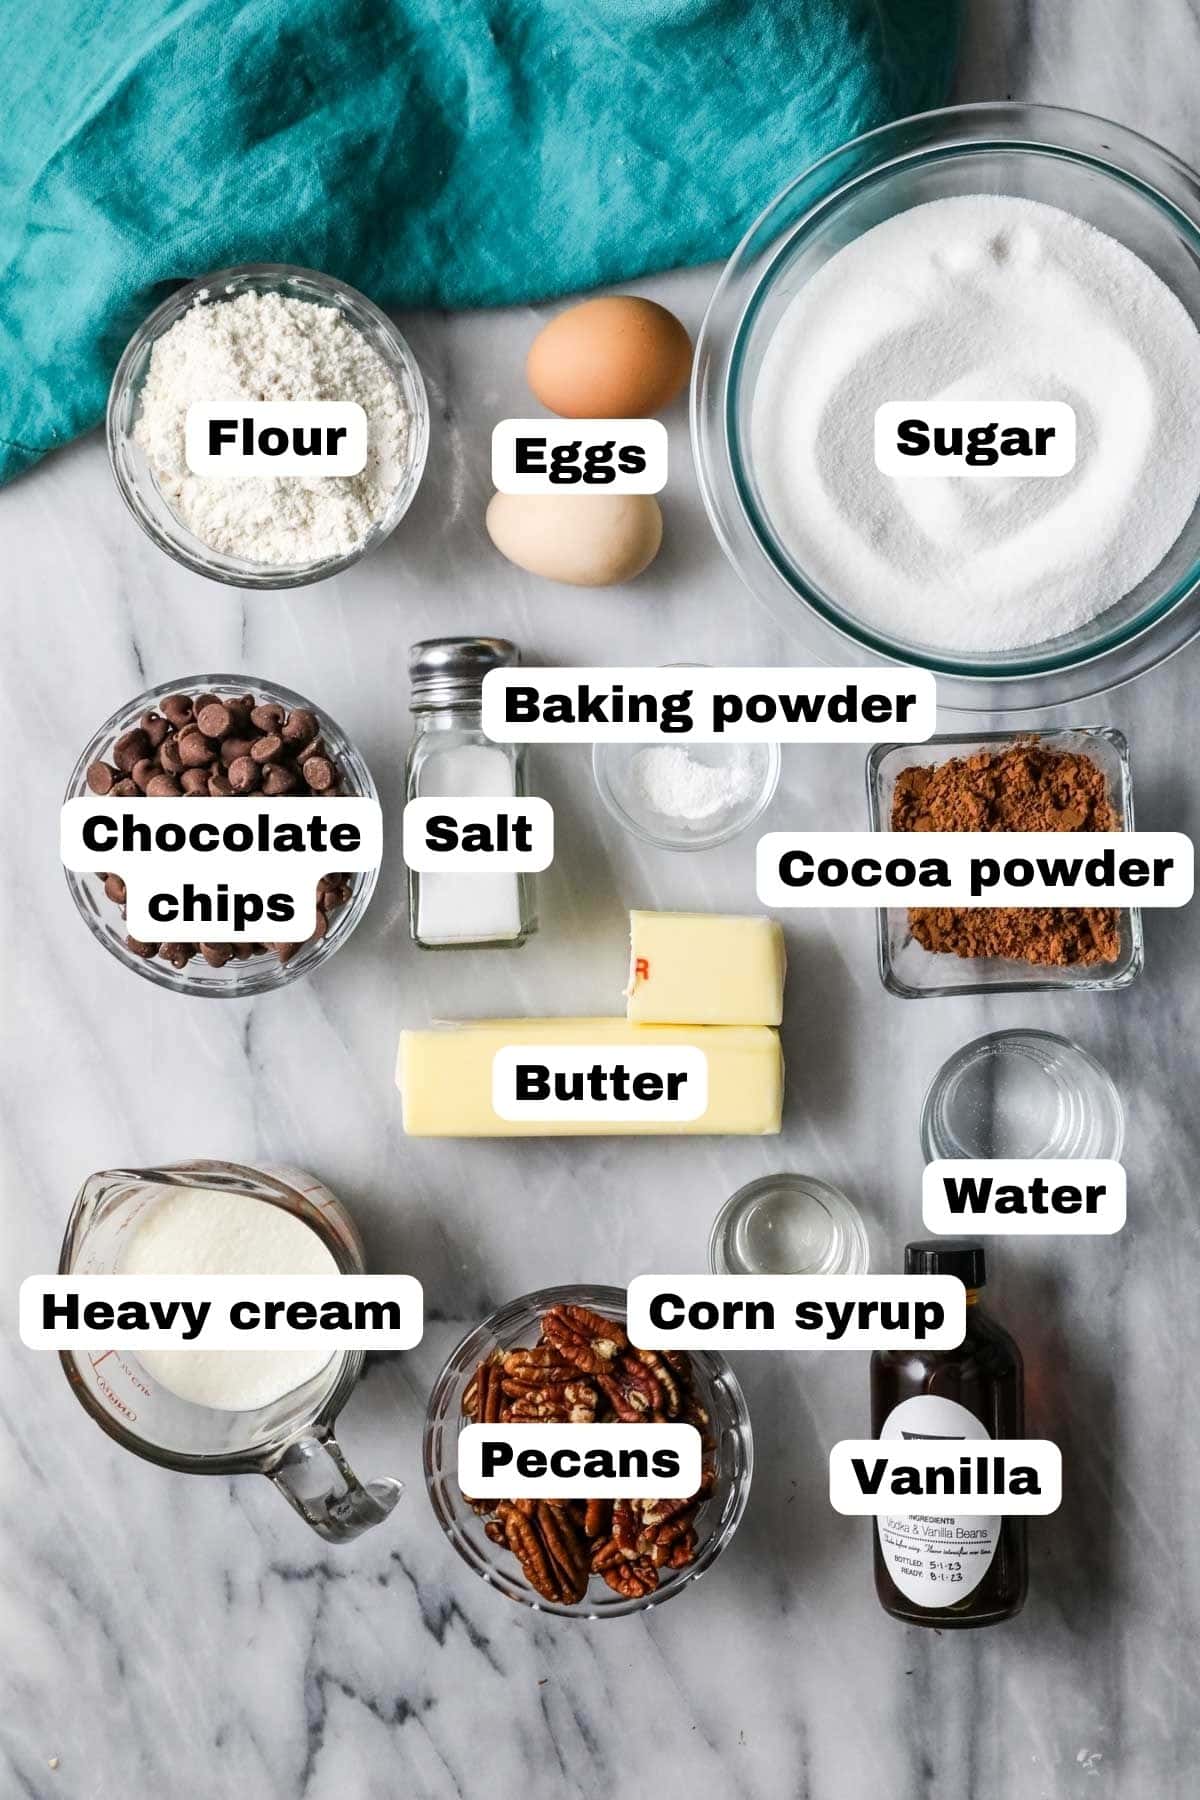 Ingredients for Turtle brownies